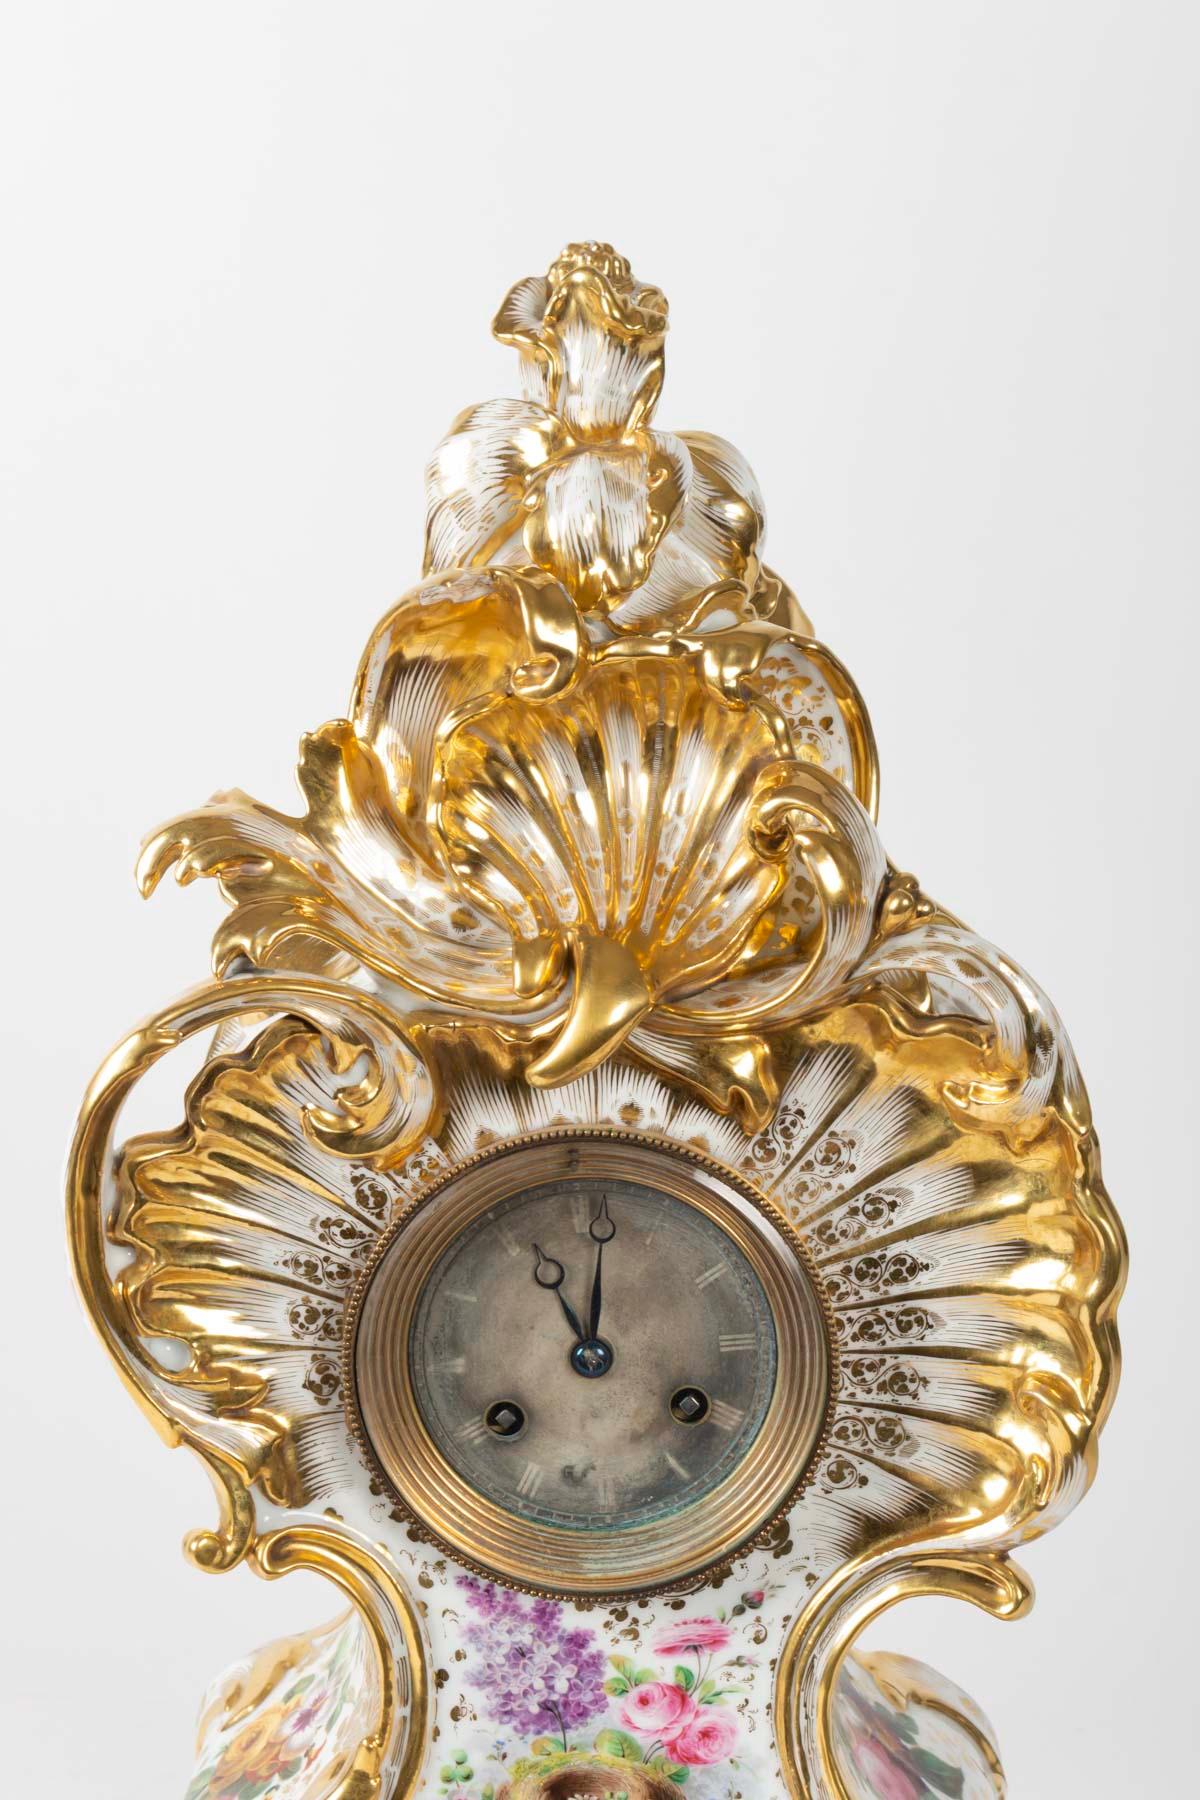 Louis XV style Napoleon III clock by Jacob Petit in Porcelain of Paris
Measures: H 55cm, W 35cm, W 20cm.